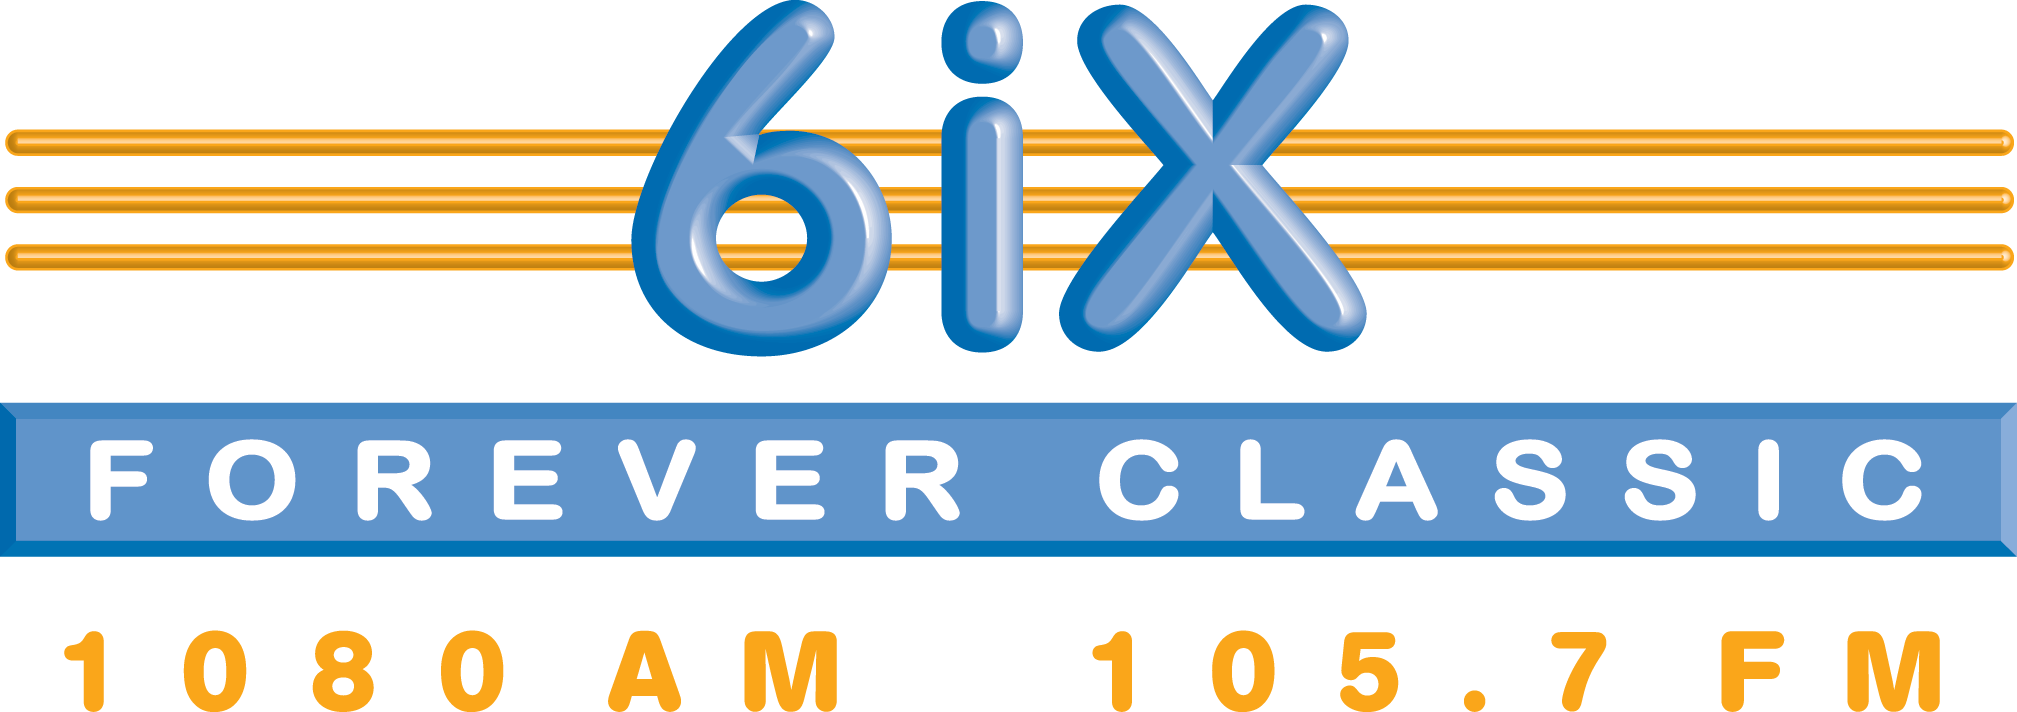 6iX - Forever Classic. 1080 AM, 105.7 FM